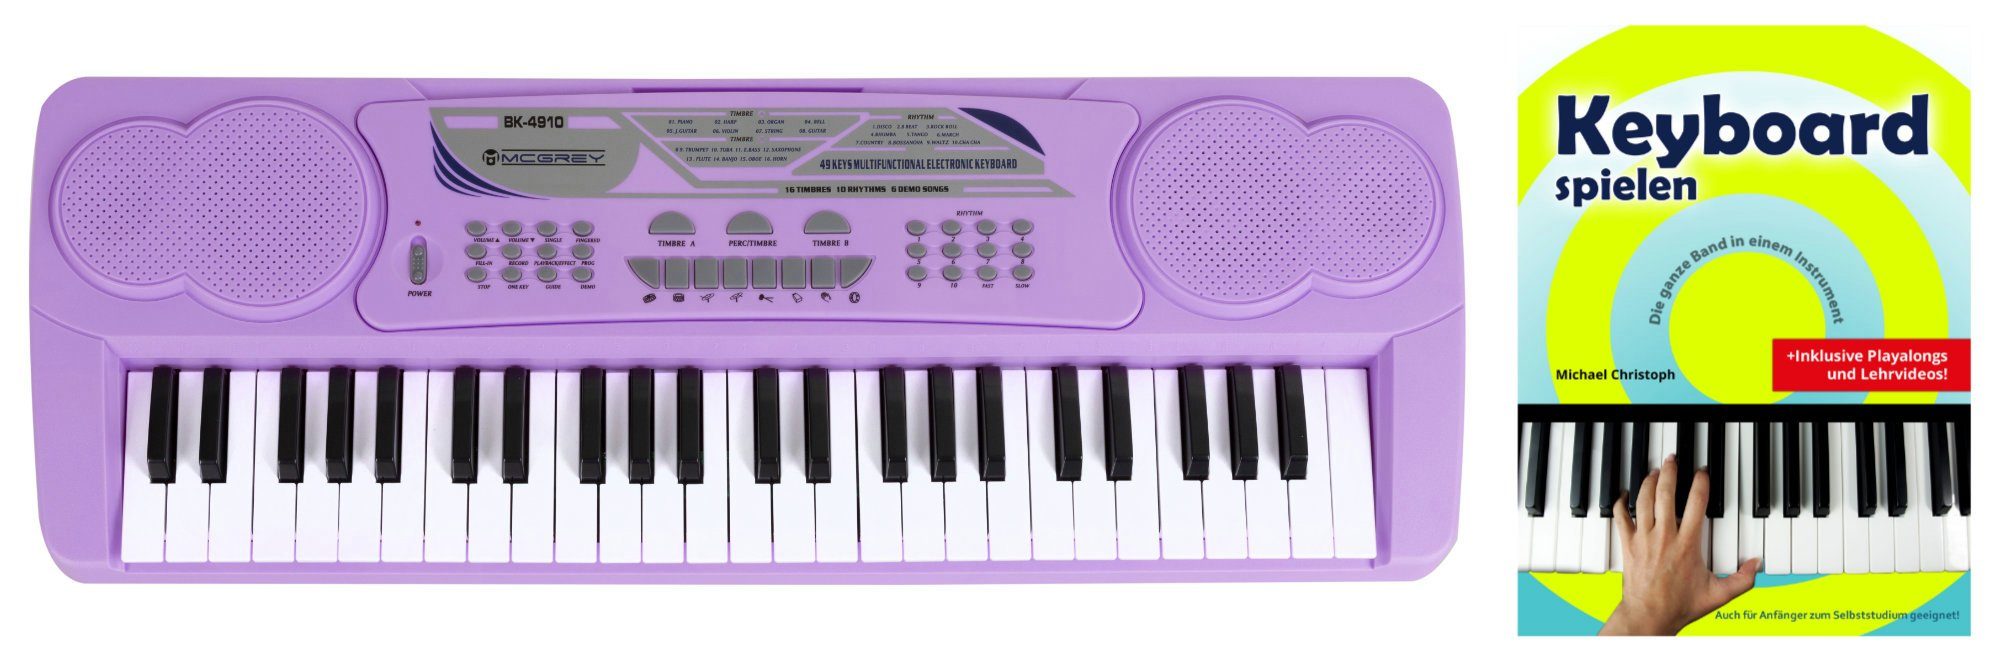 Digital 61 Tasten Keyboard Keyboardschule 100 Sounds & Rhythmen Lernfunktion 